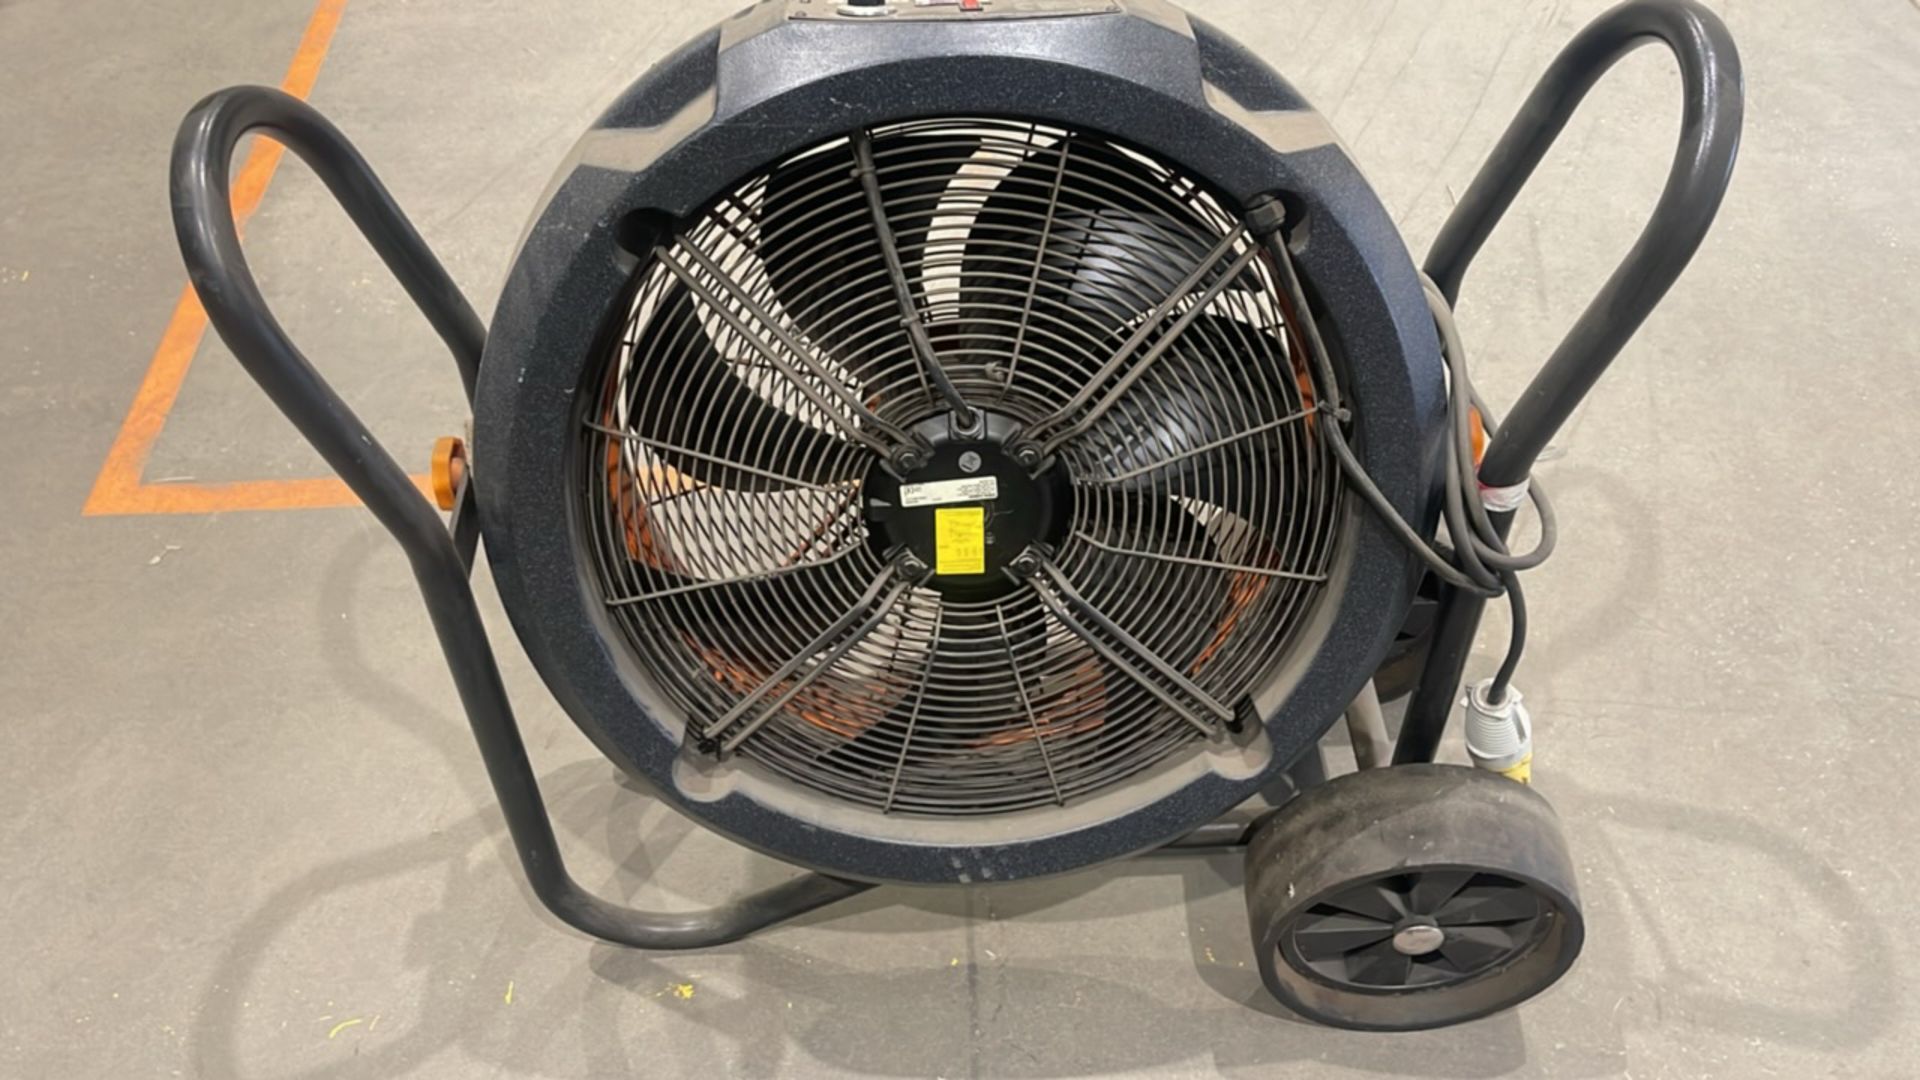 Rhino 115v FE050 Industrial Cooling Fan Crowd Fan Air Mover Drying Fan - Image 3 of 6